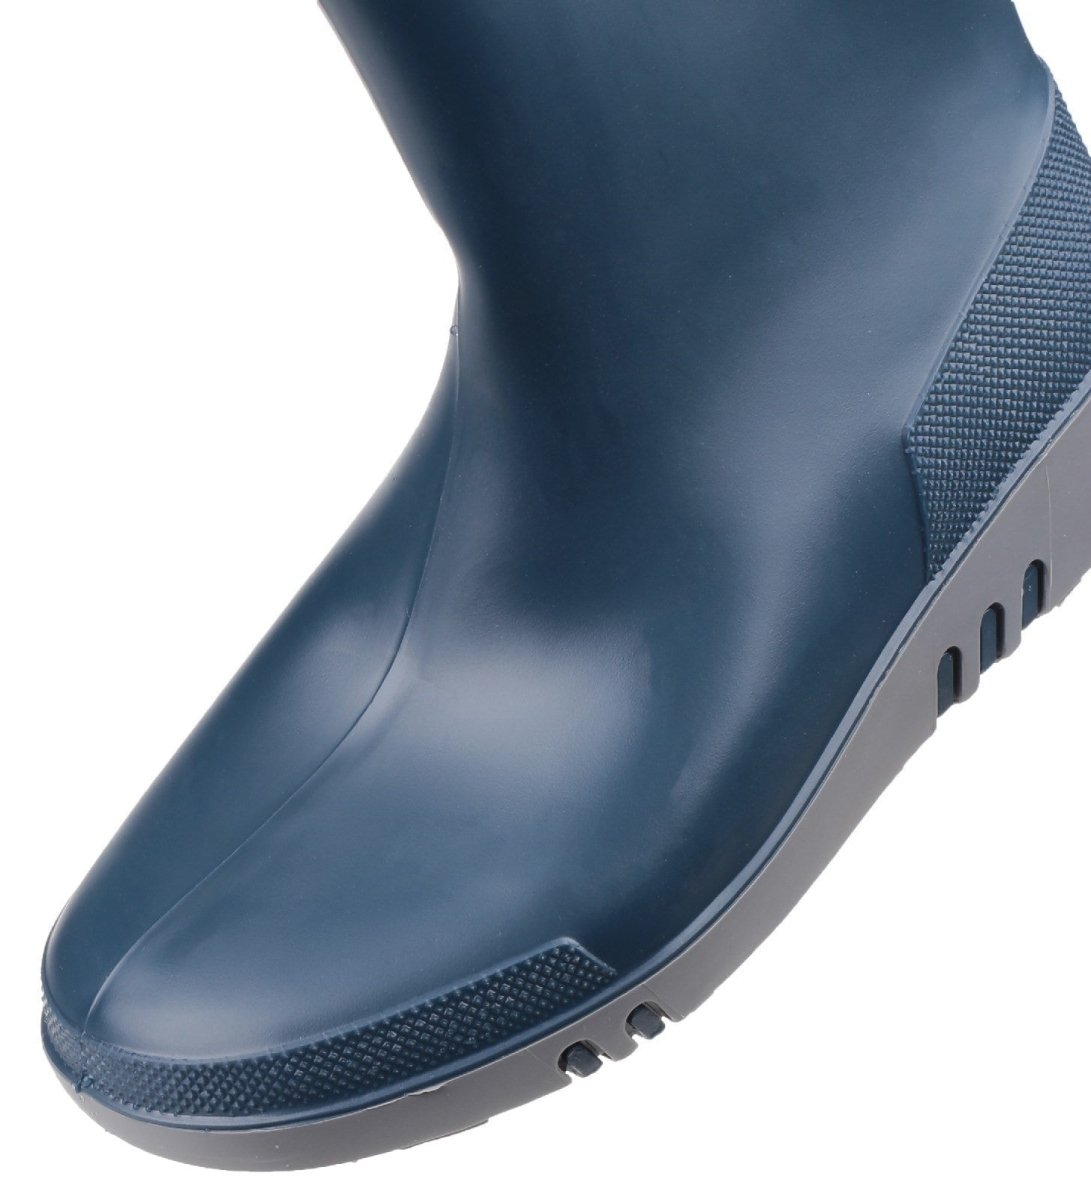 Dunlop Mini Elephant Kids Waterproof Wellington Boots - Shoe Store Direct